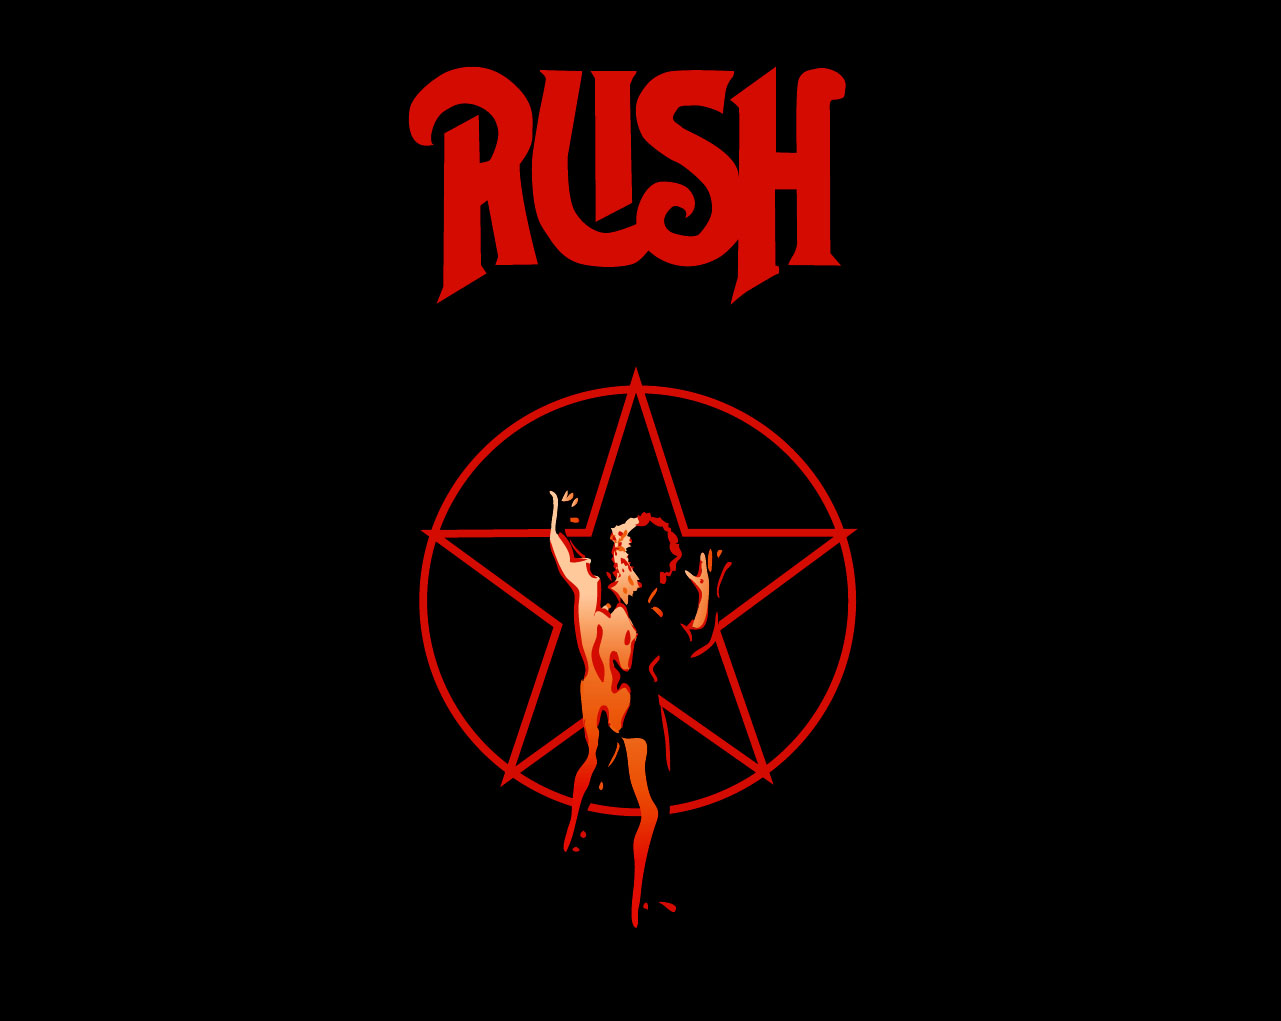 [49+] Rush Album Covers Wallpaper on WallpaperSafari